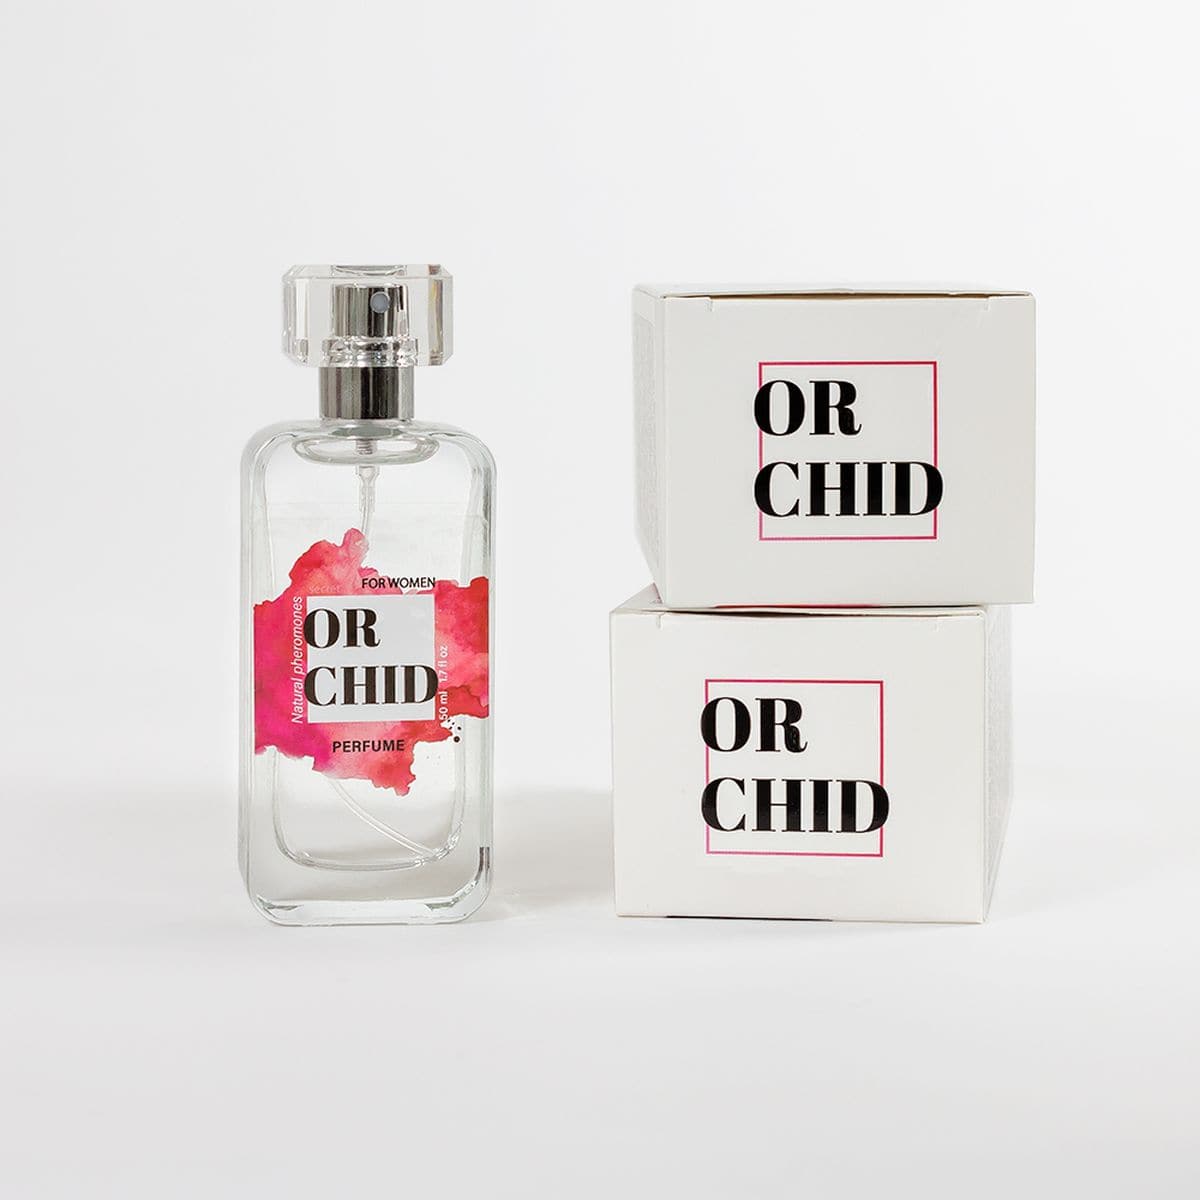 Perfume Mulher com Feromonas, Secret Orchid, Atrativo de Trufas 50ml